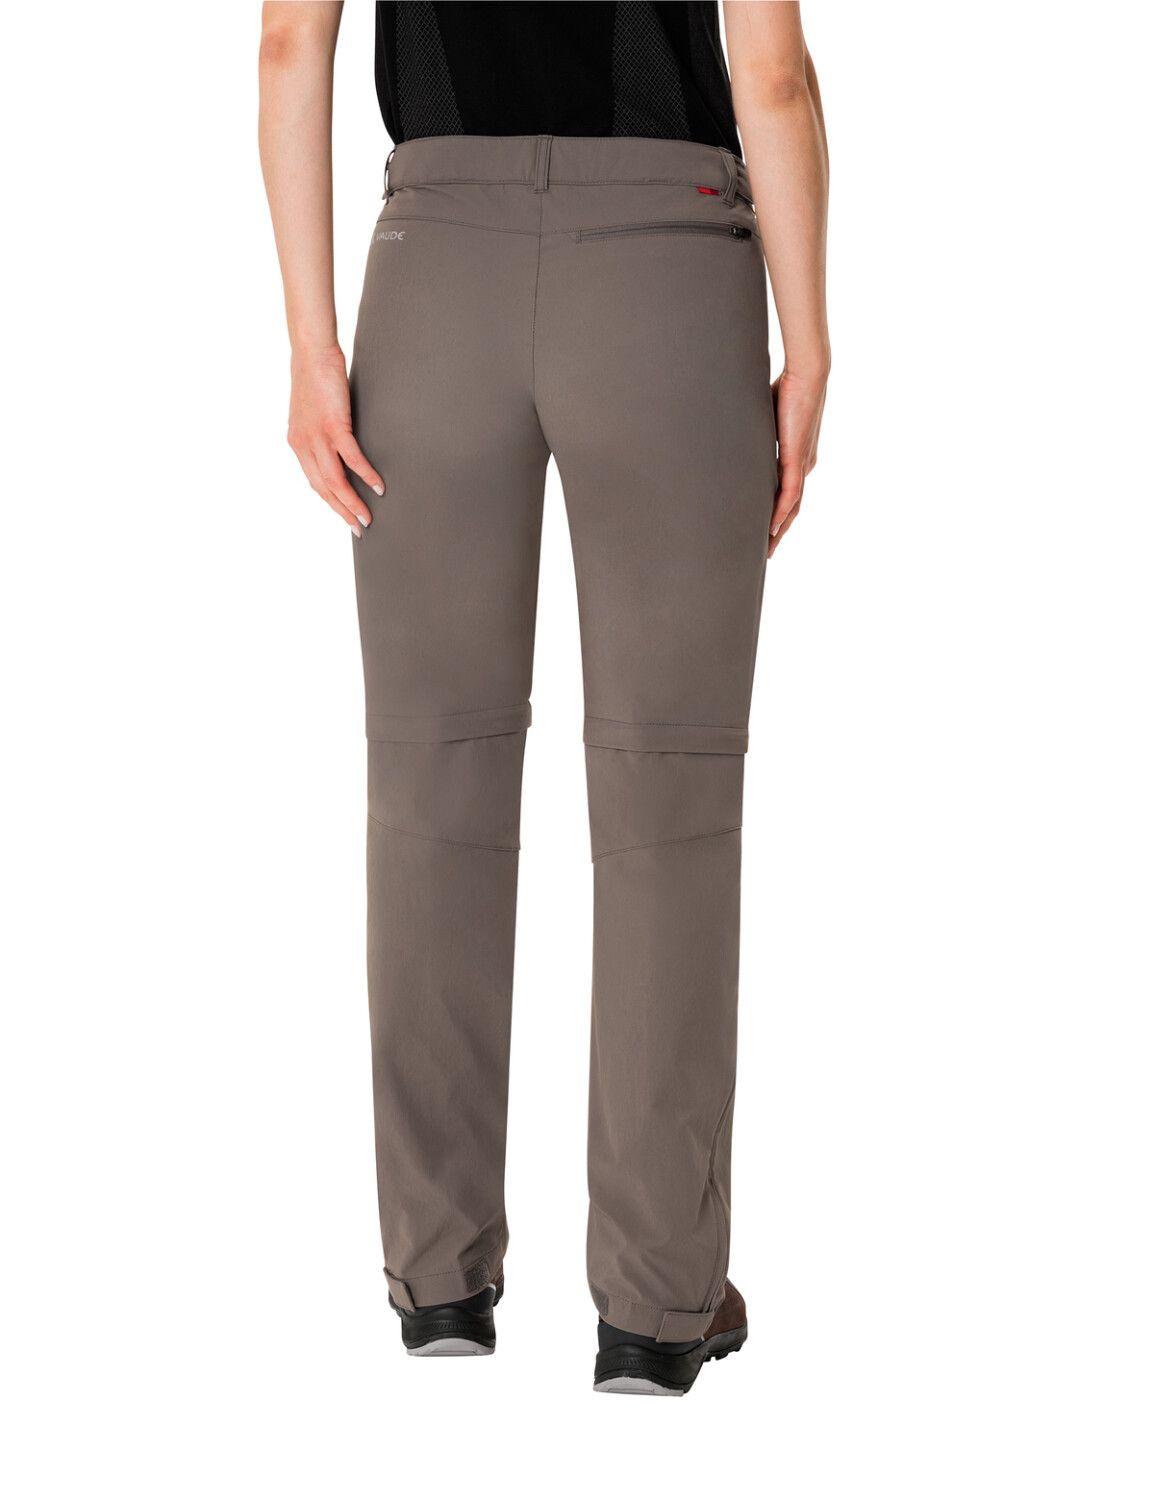 VAUDE Women's Farley Stretch ZO T-Zip Pants (Bild 18)